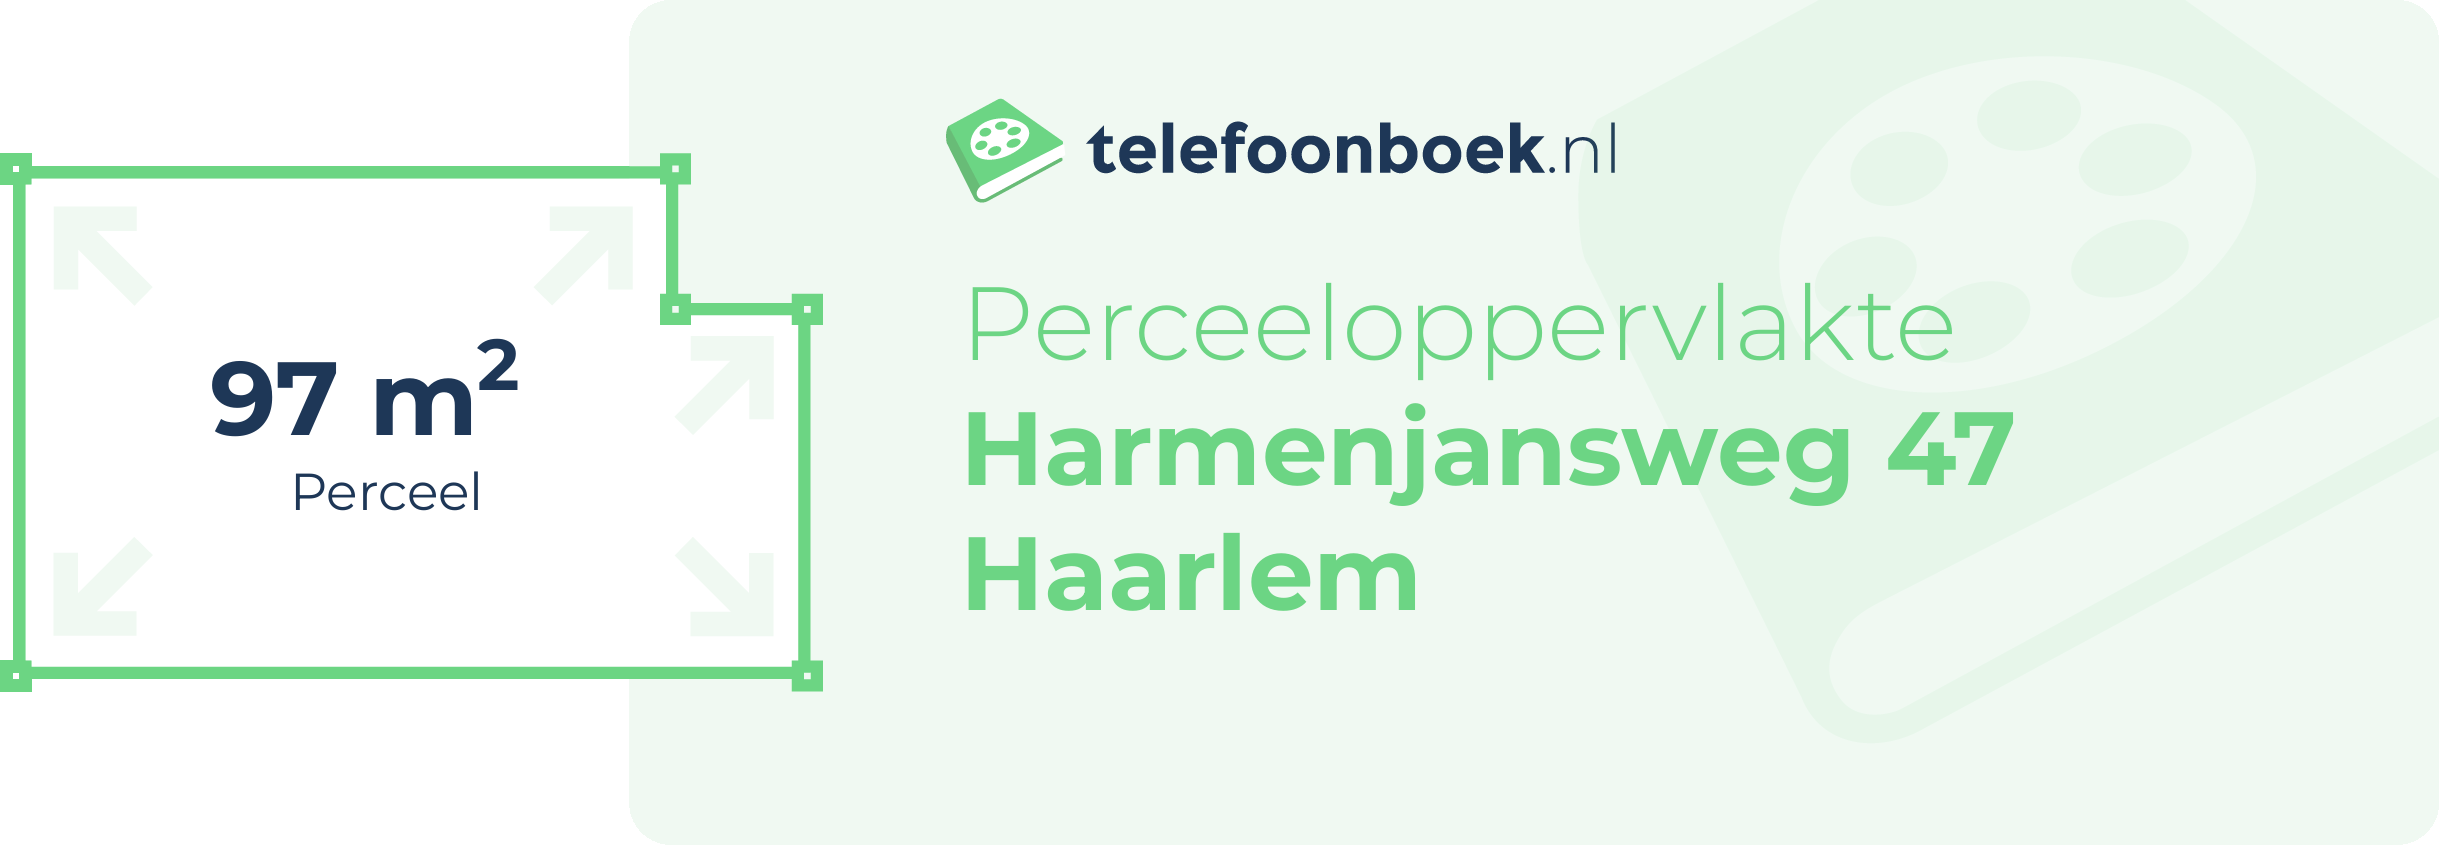 Perceeloppervlakte Harmenjansweg 47 Haarlem